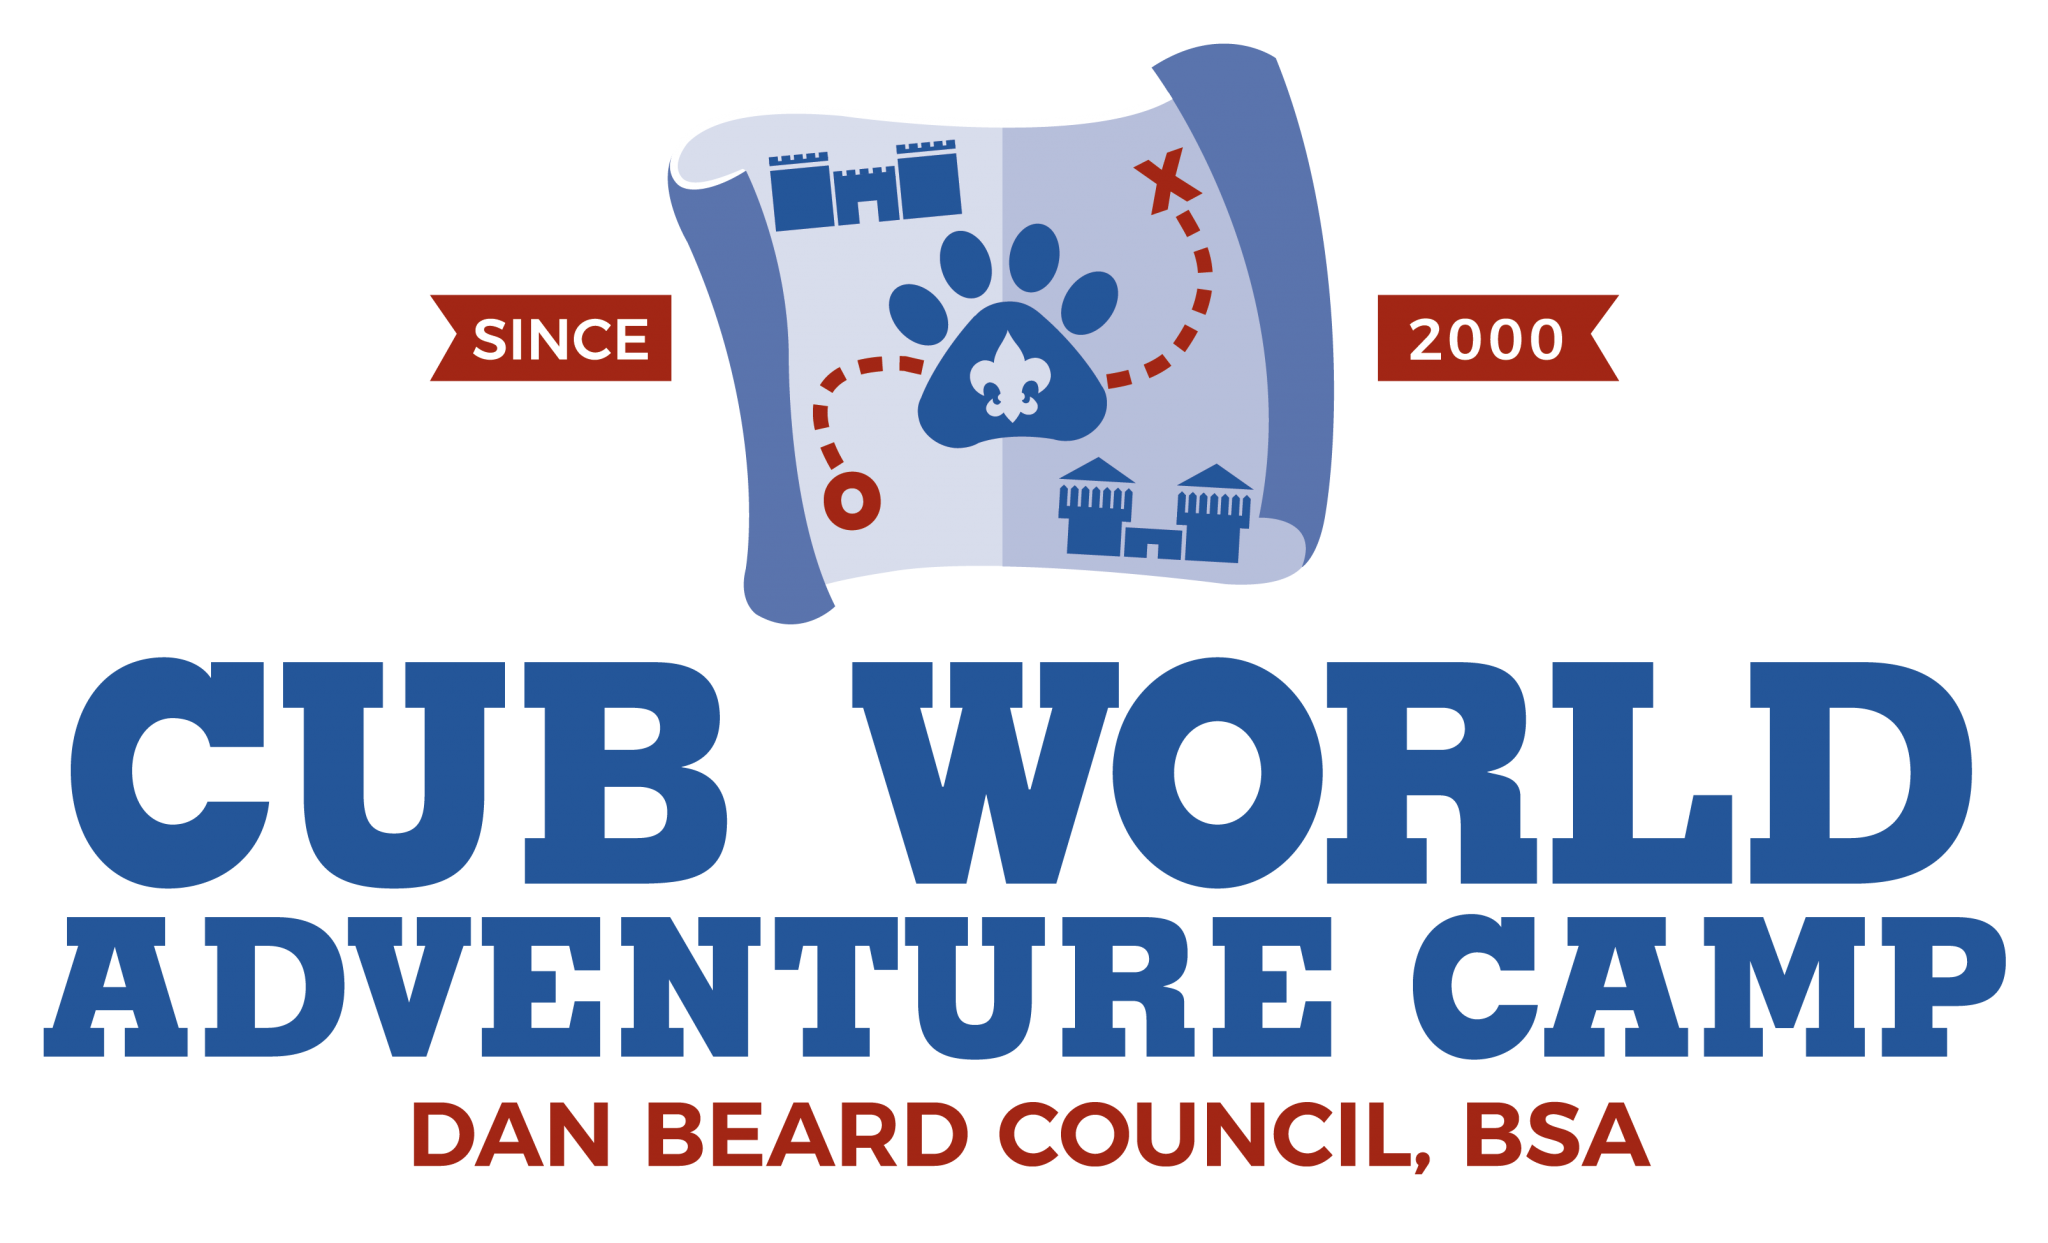 Cub Scout Camping Boy Scouts of America, Dan Beard Council